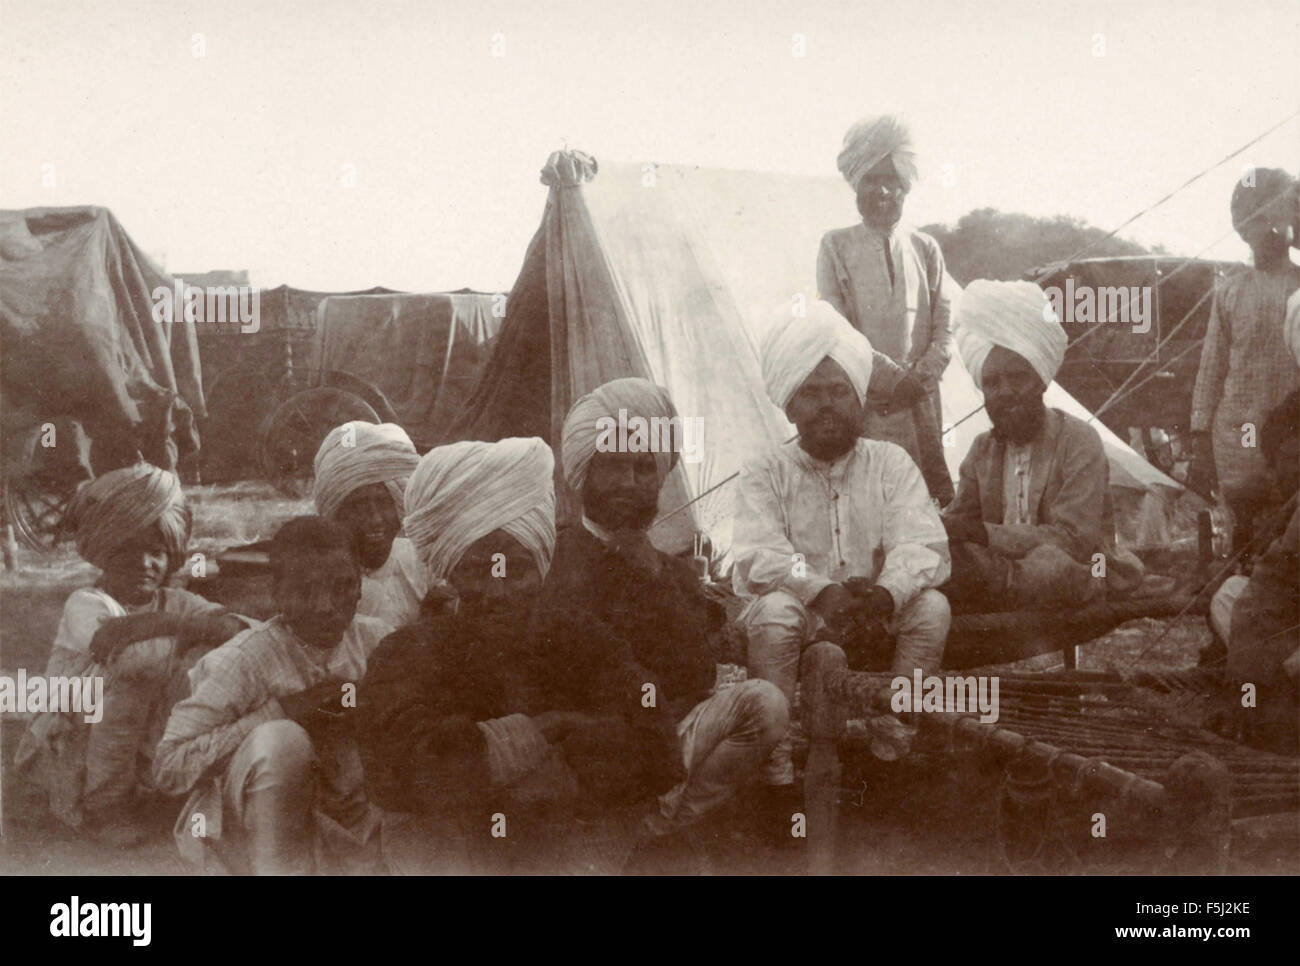 Unomini Gruppe von Kindern in einem Lager, Indien Stockfoto